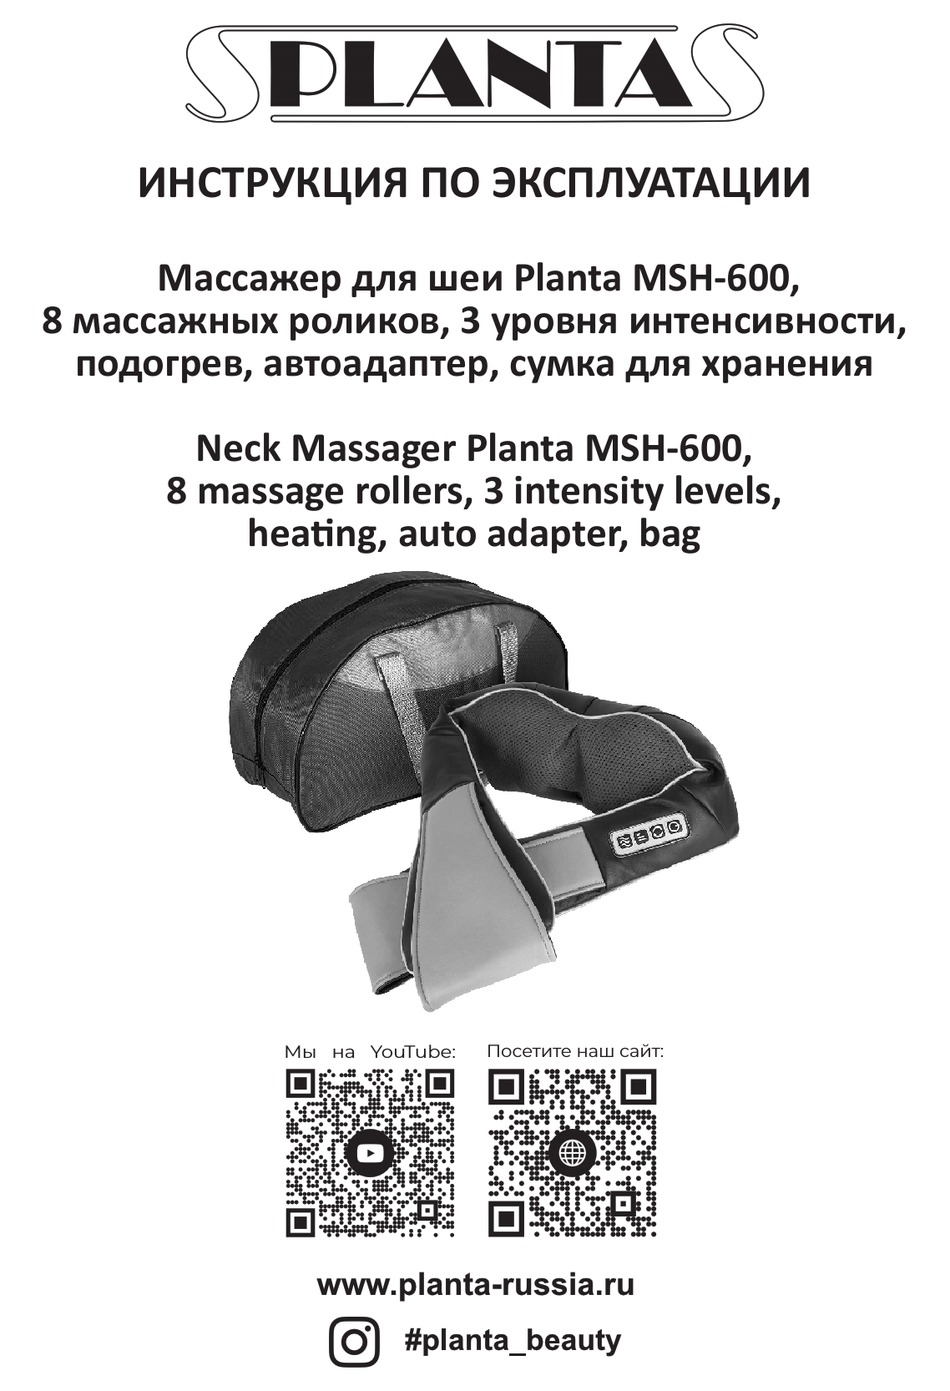 PLANTA MSH-600 QUICK START MANUAL Pdf Download | ManualsLib